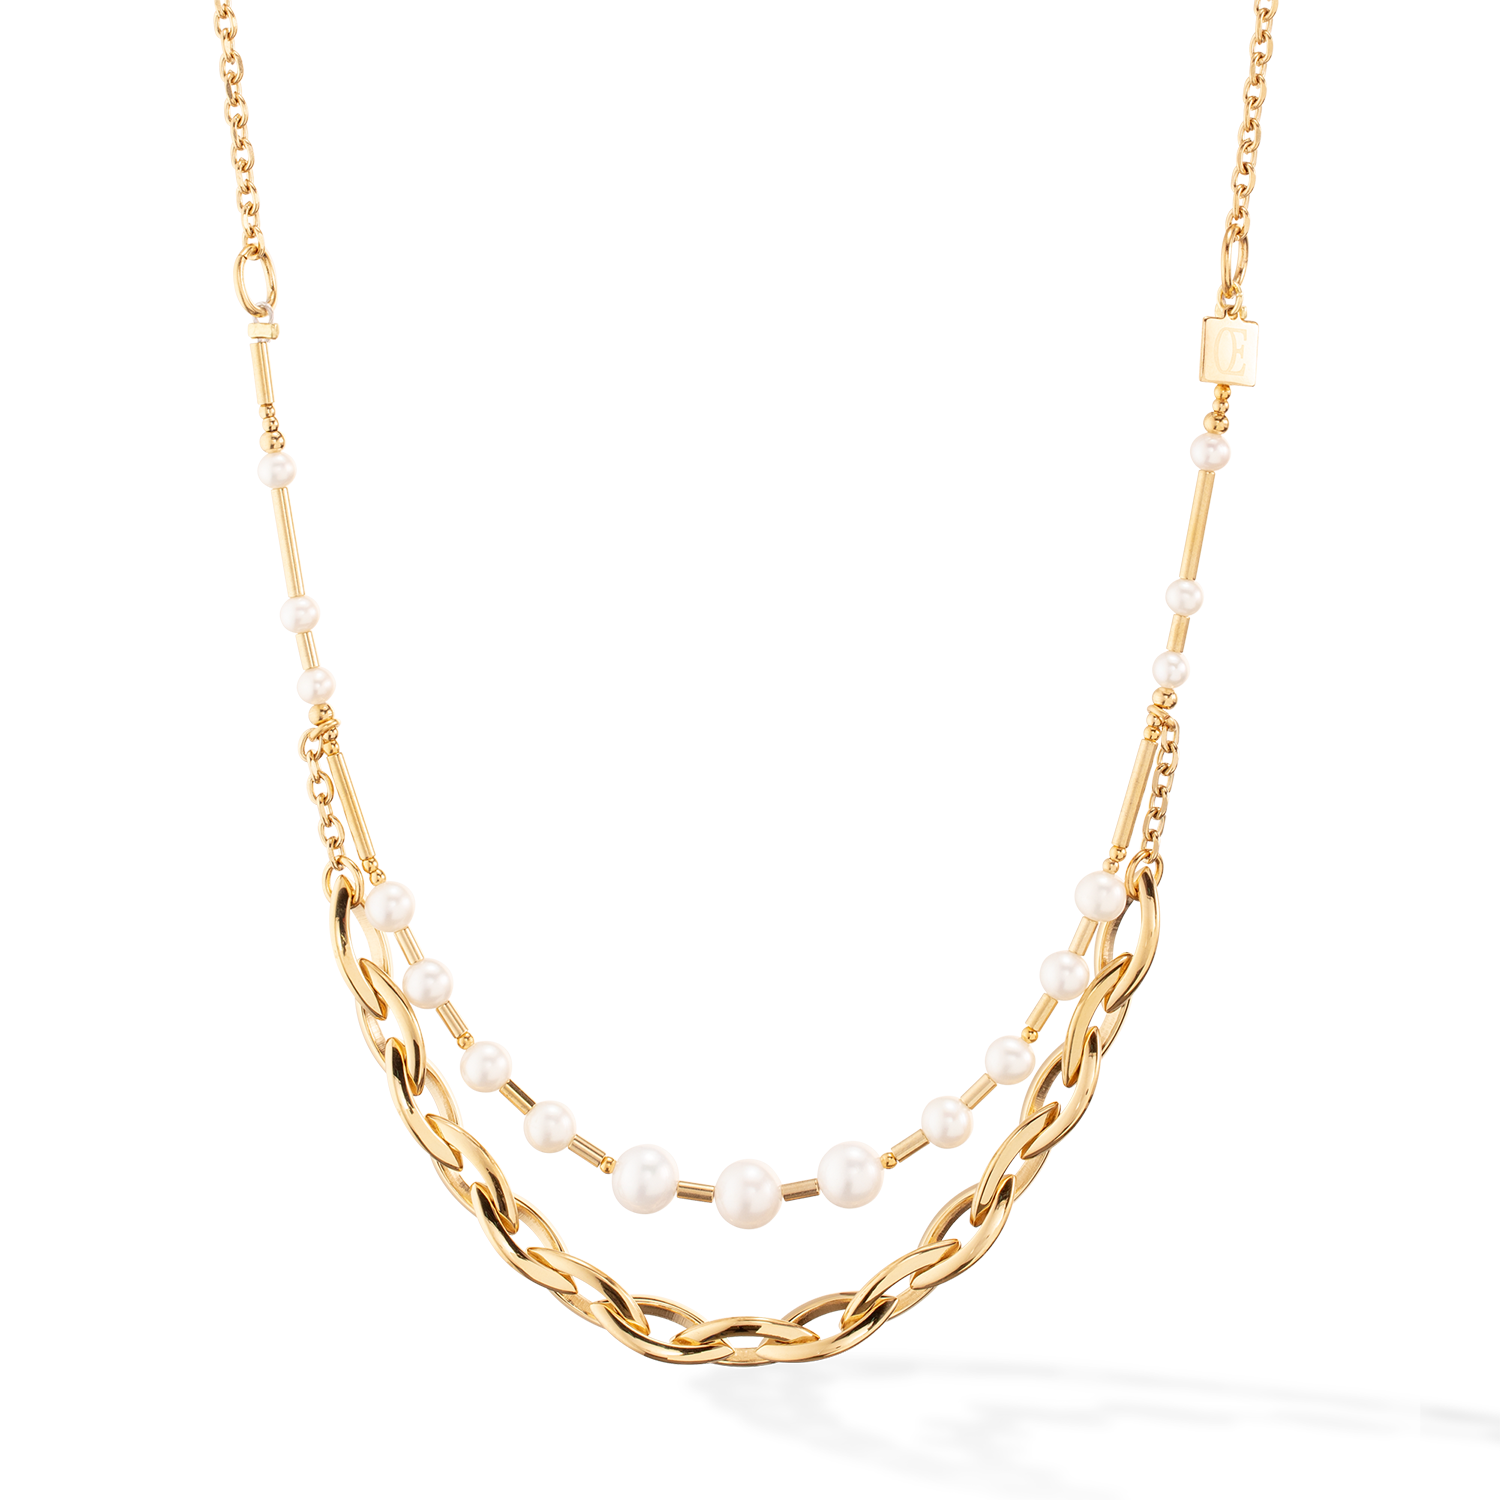 Halskette Süßwasserperlen & Chunky Chain Navette Multiwear weiß-gold